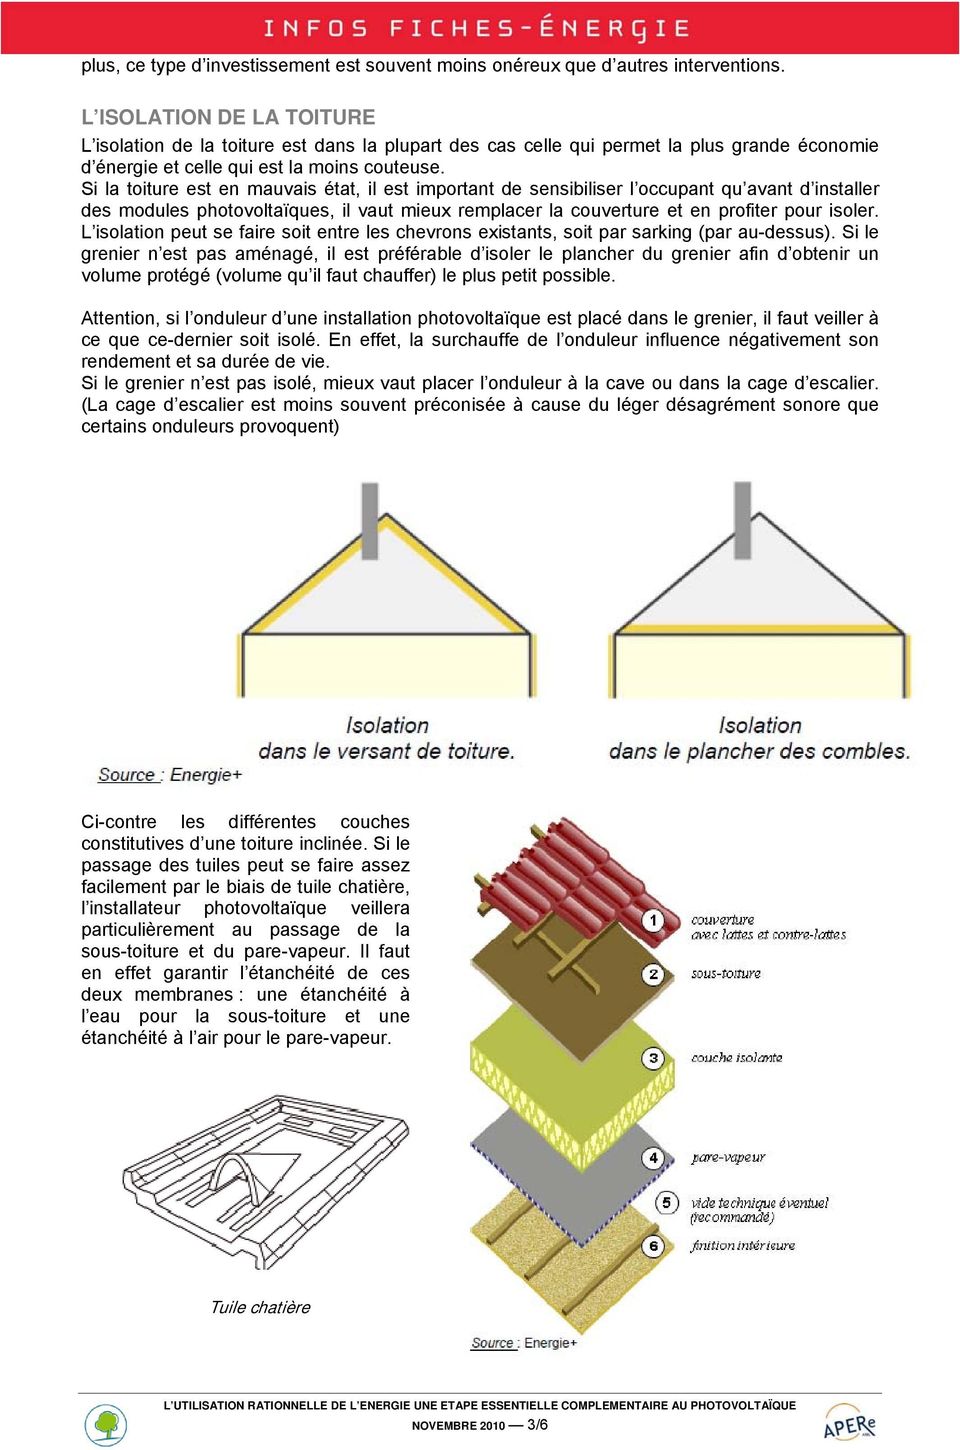 Si la toiture est en mauvais état, il est important de sensibiliser l occupant qu avant d installer des modules photovoltaïques, il vaut mieux remplacer la couverture et en profiter pour isoler.